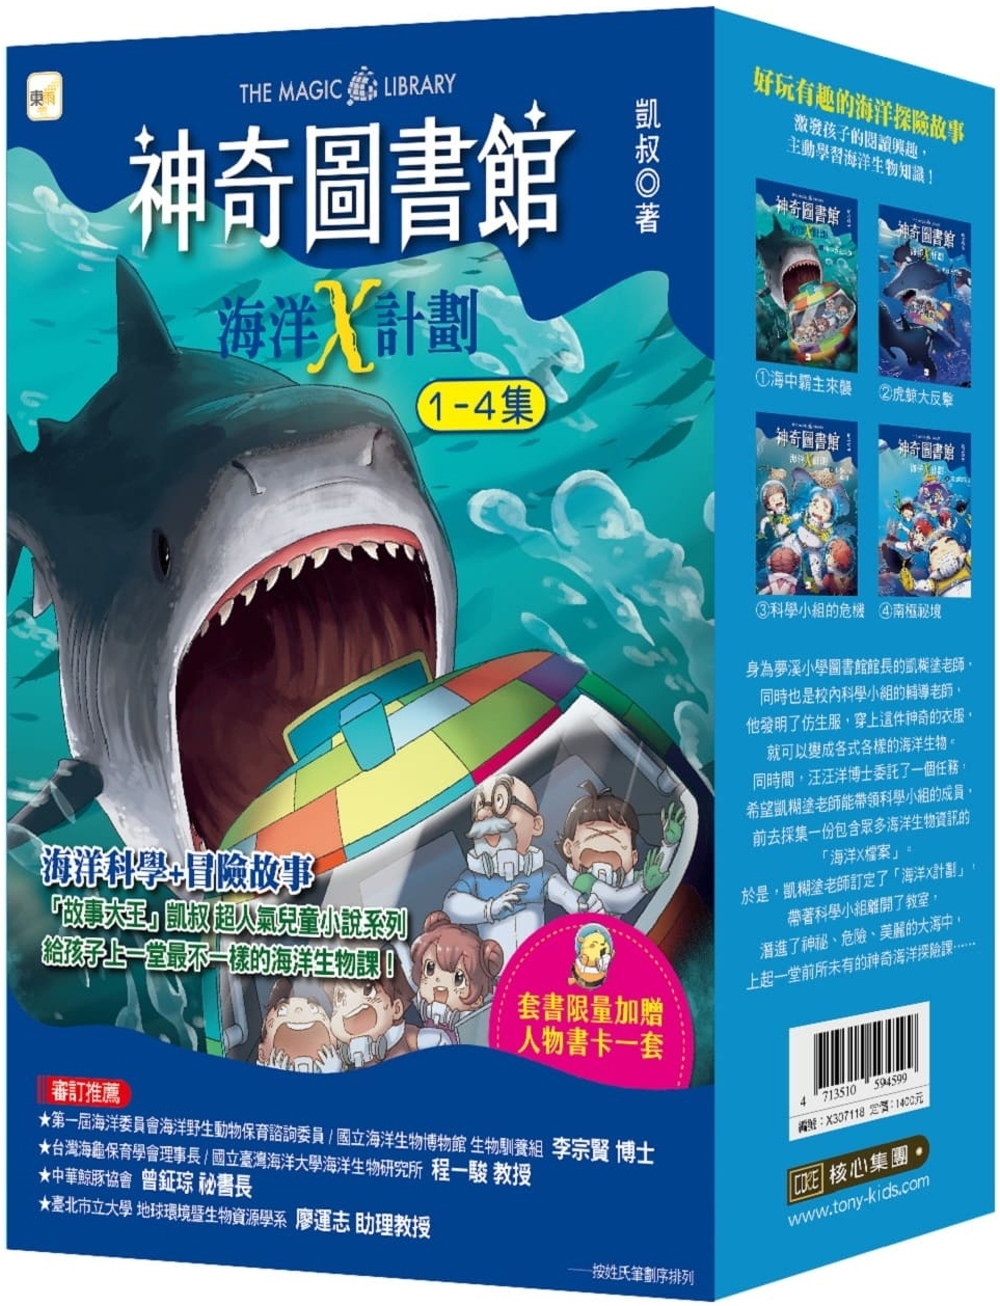 【神奇圖書館】海洋X計劃 1-4冊套書 （中高年級知識讀本）...